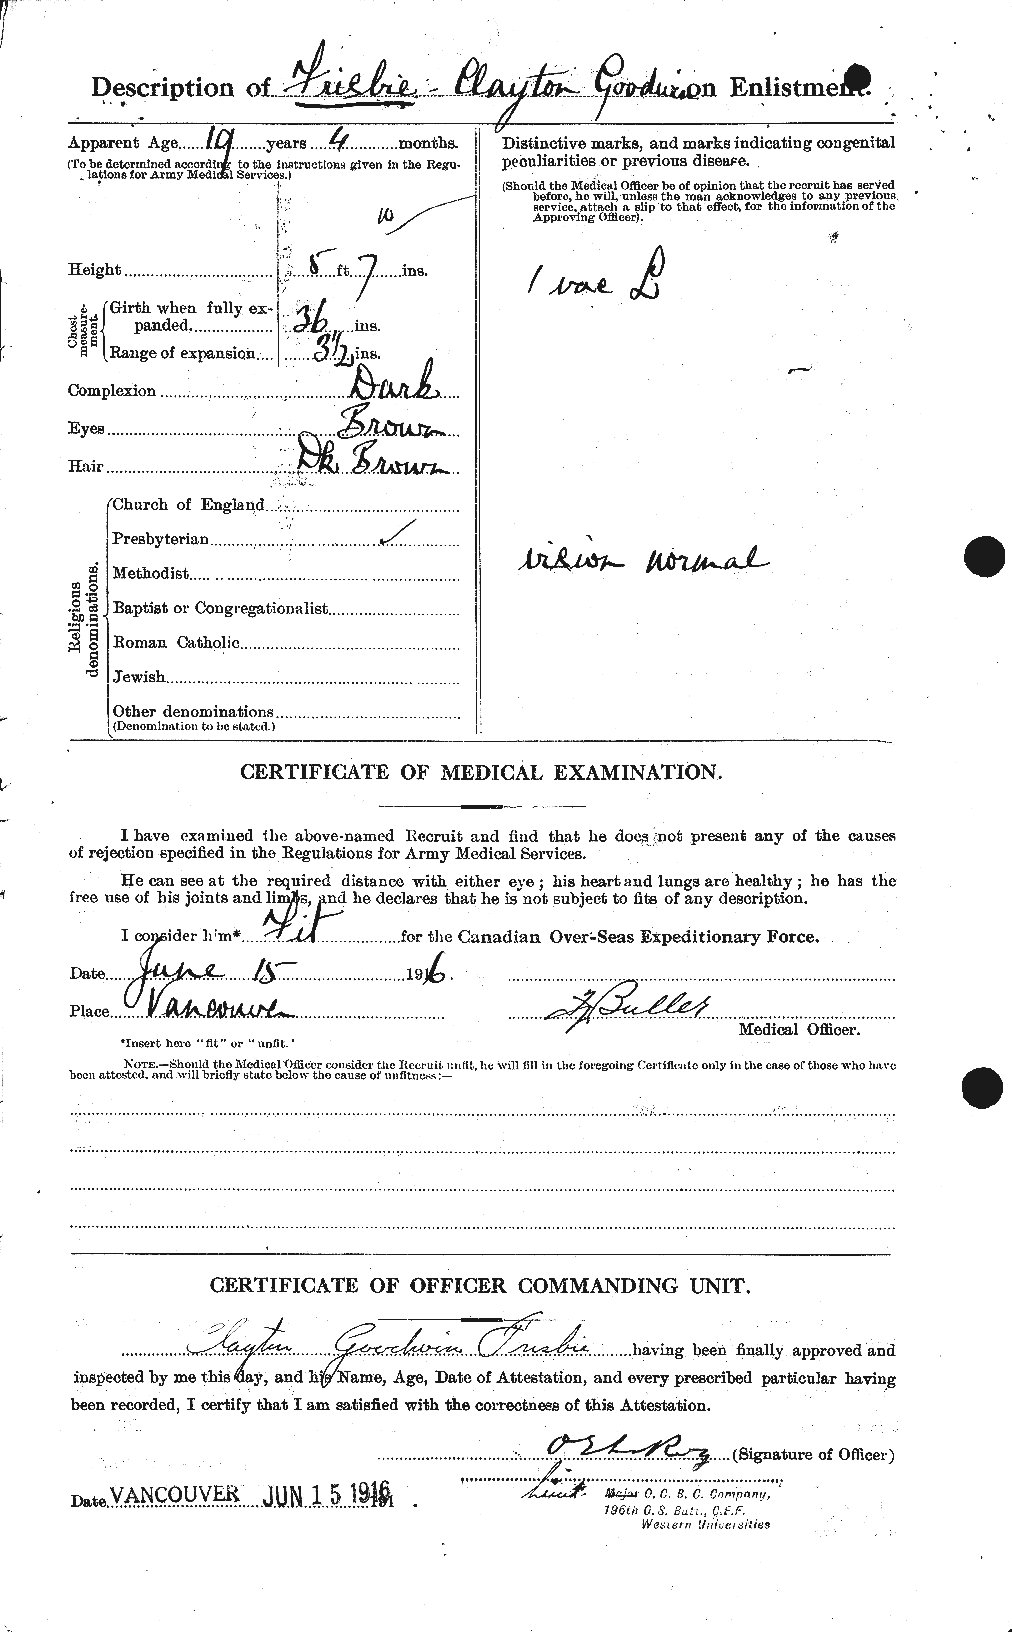 Dossiers du Personnel de la Première Guerre mondiale - CEC 337450b